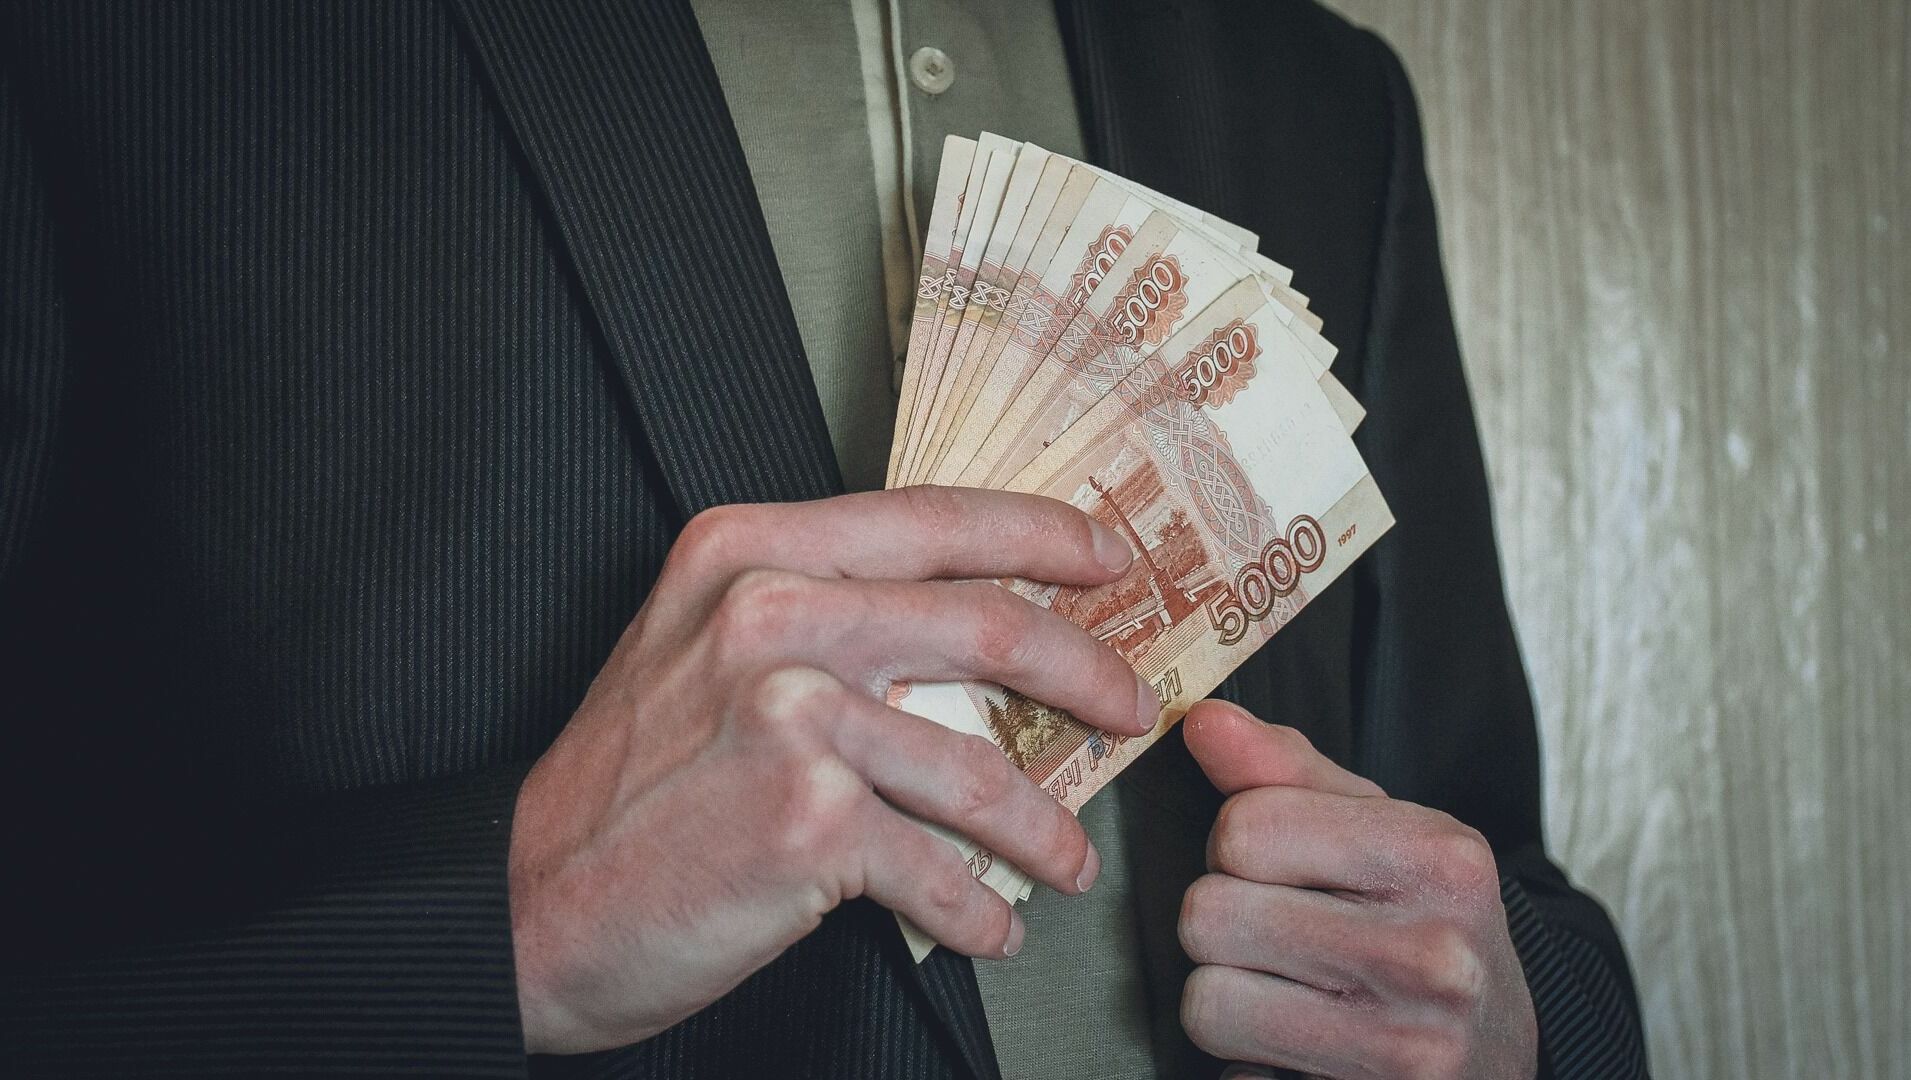 Пострадавший в ДТП тюменец взыскал с виновника 200 тысяч рублей на операцию